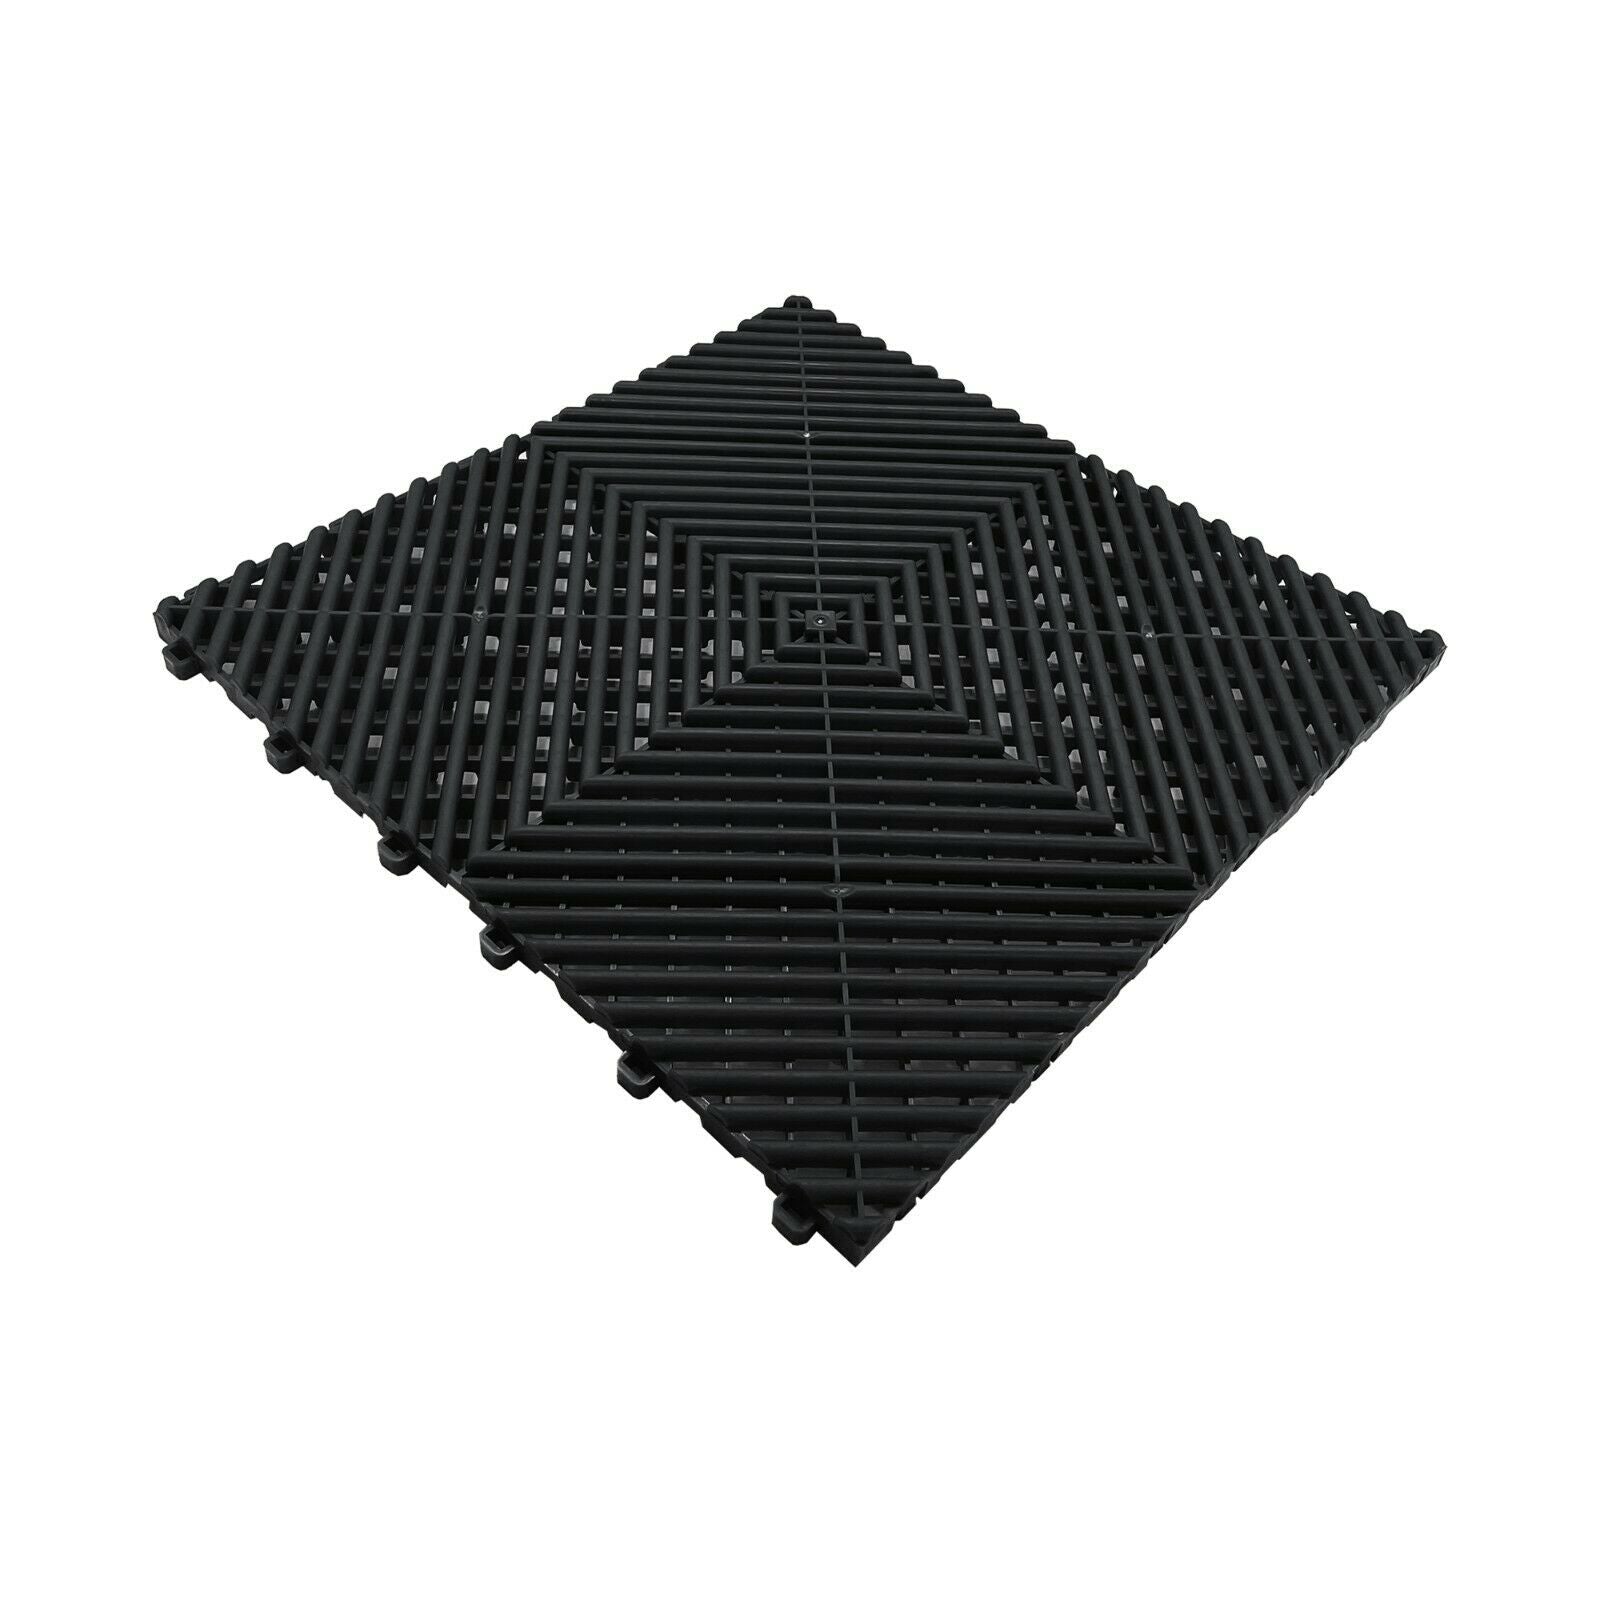 Nicoman Modular Interlocking Ribbed Garage Flooring Tiles